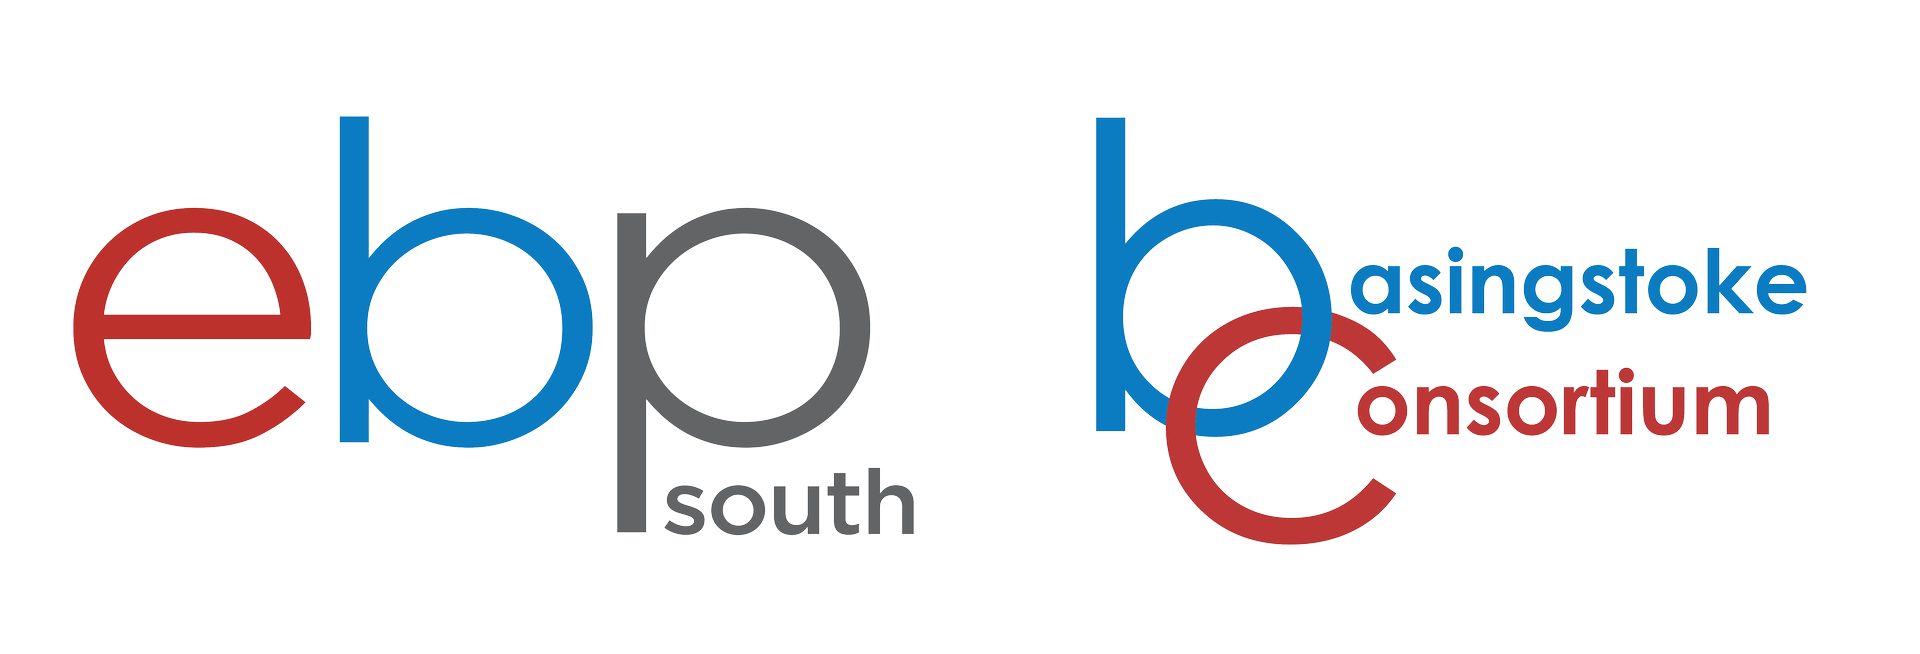 EBP South and Basingstoke Consortium